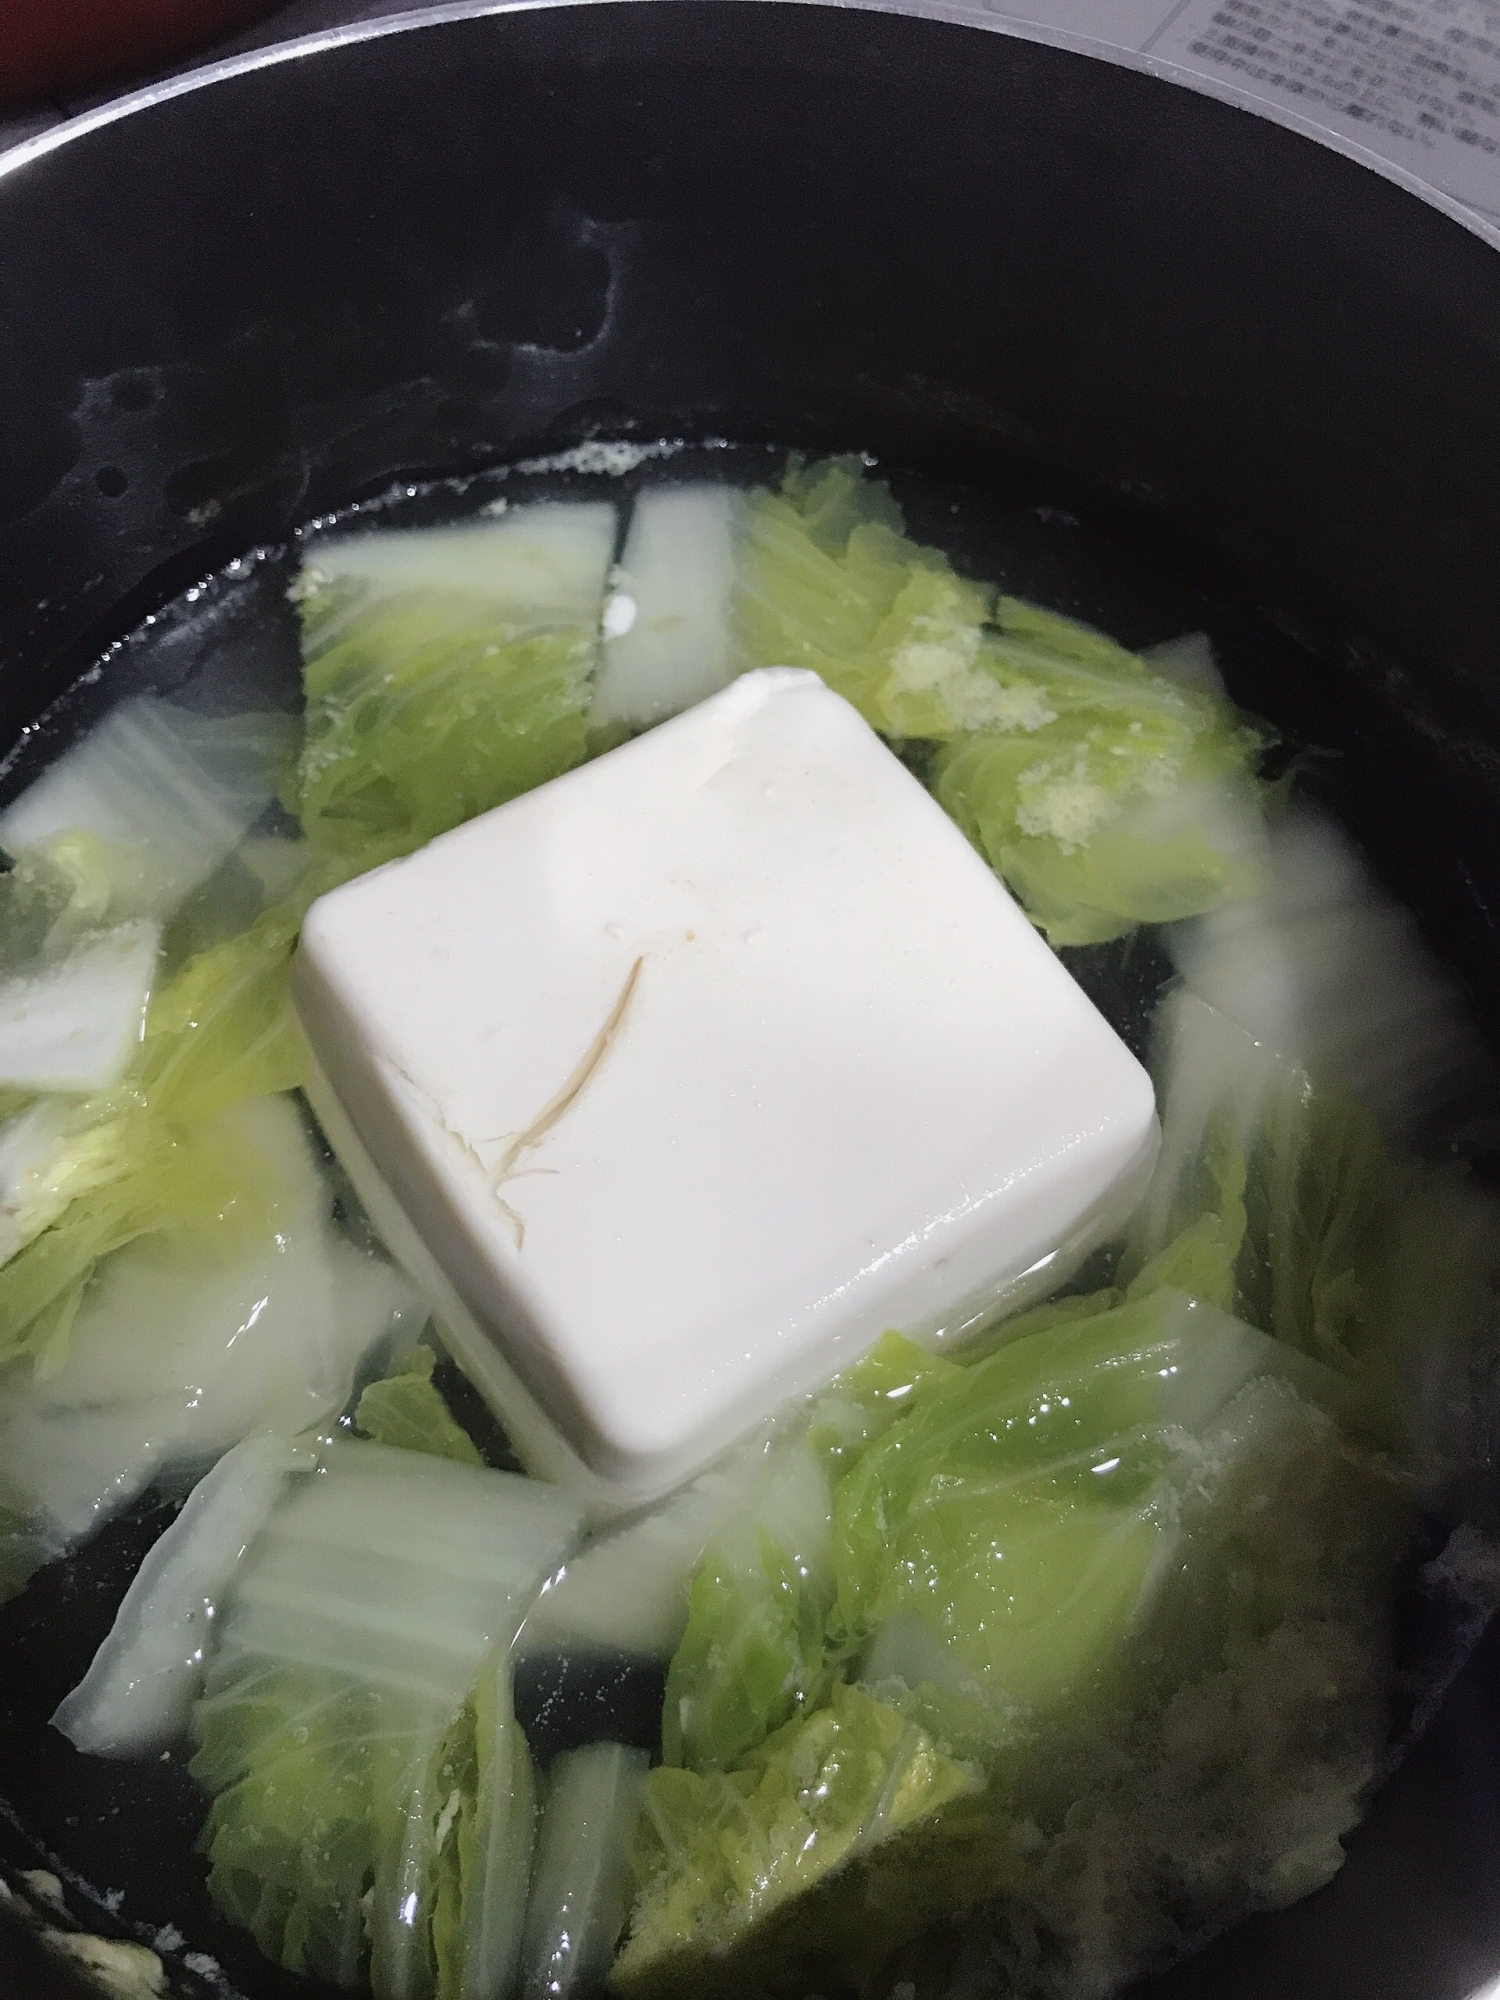 湯豆腐鍋